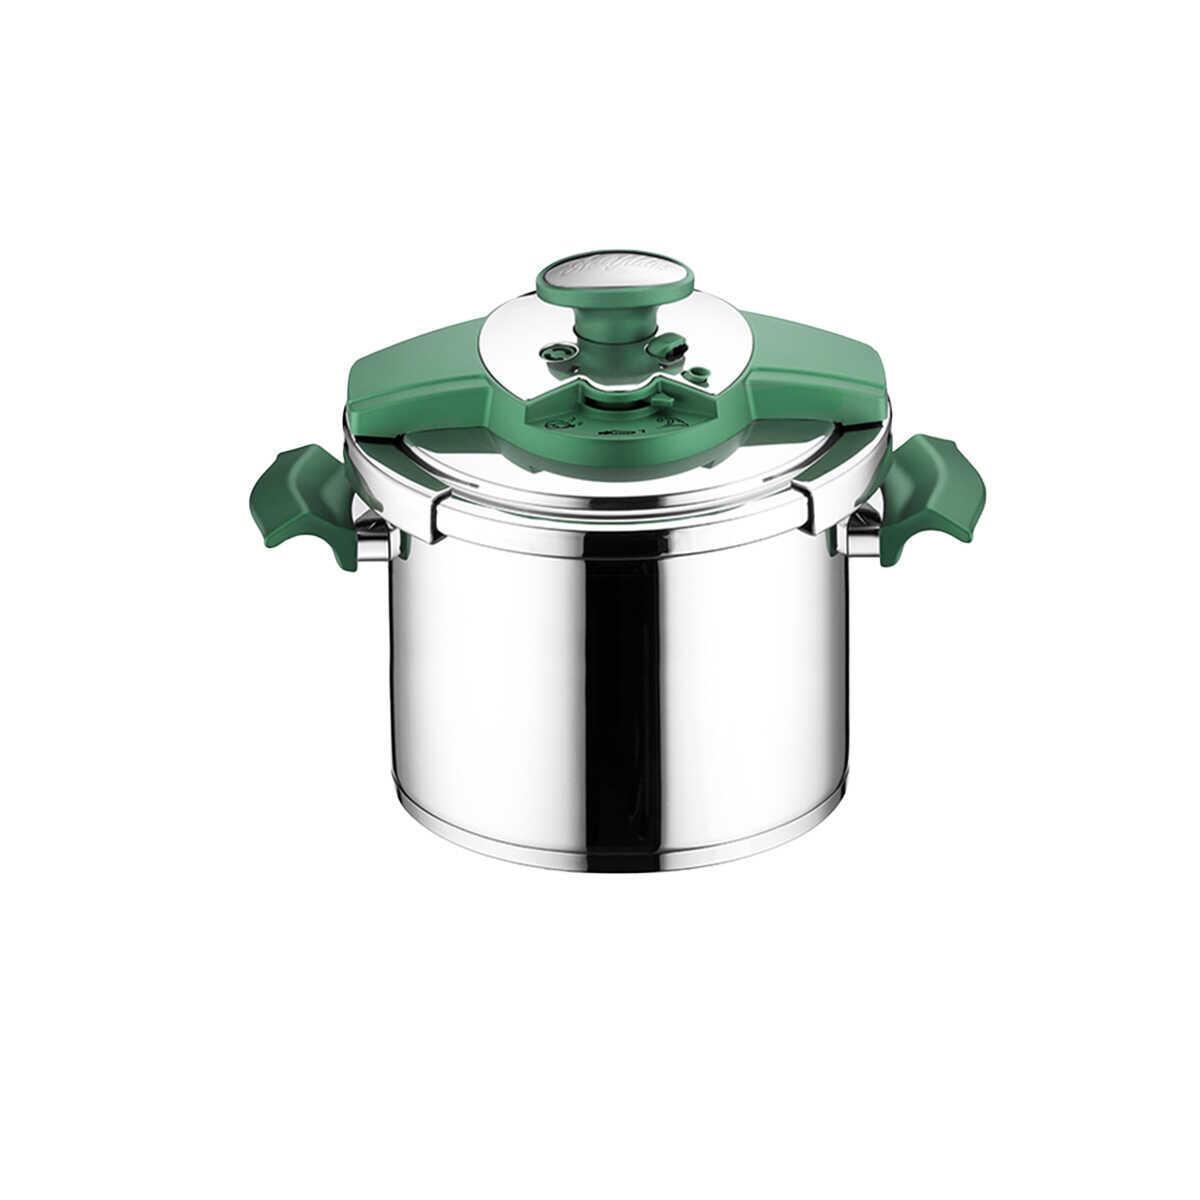 Aryıldız Milano Emerald Pressure Cooker 5.5 Liters